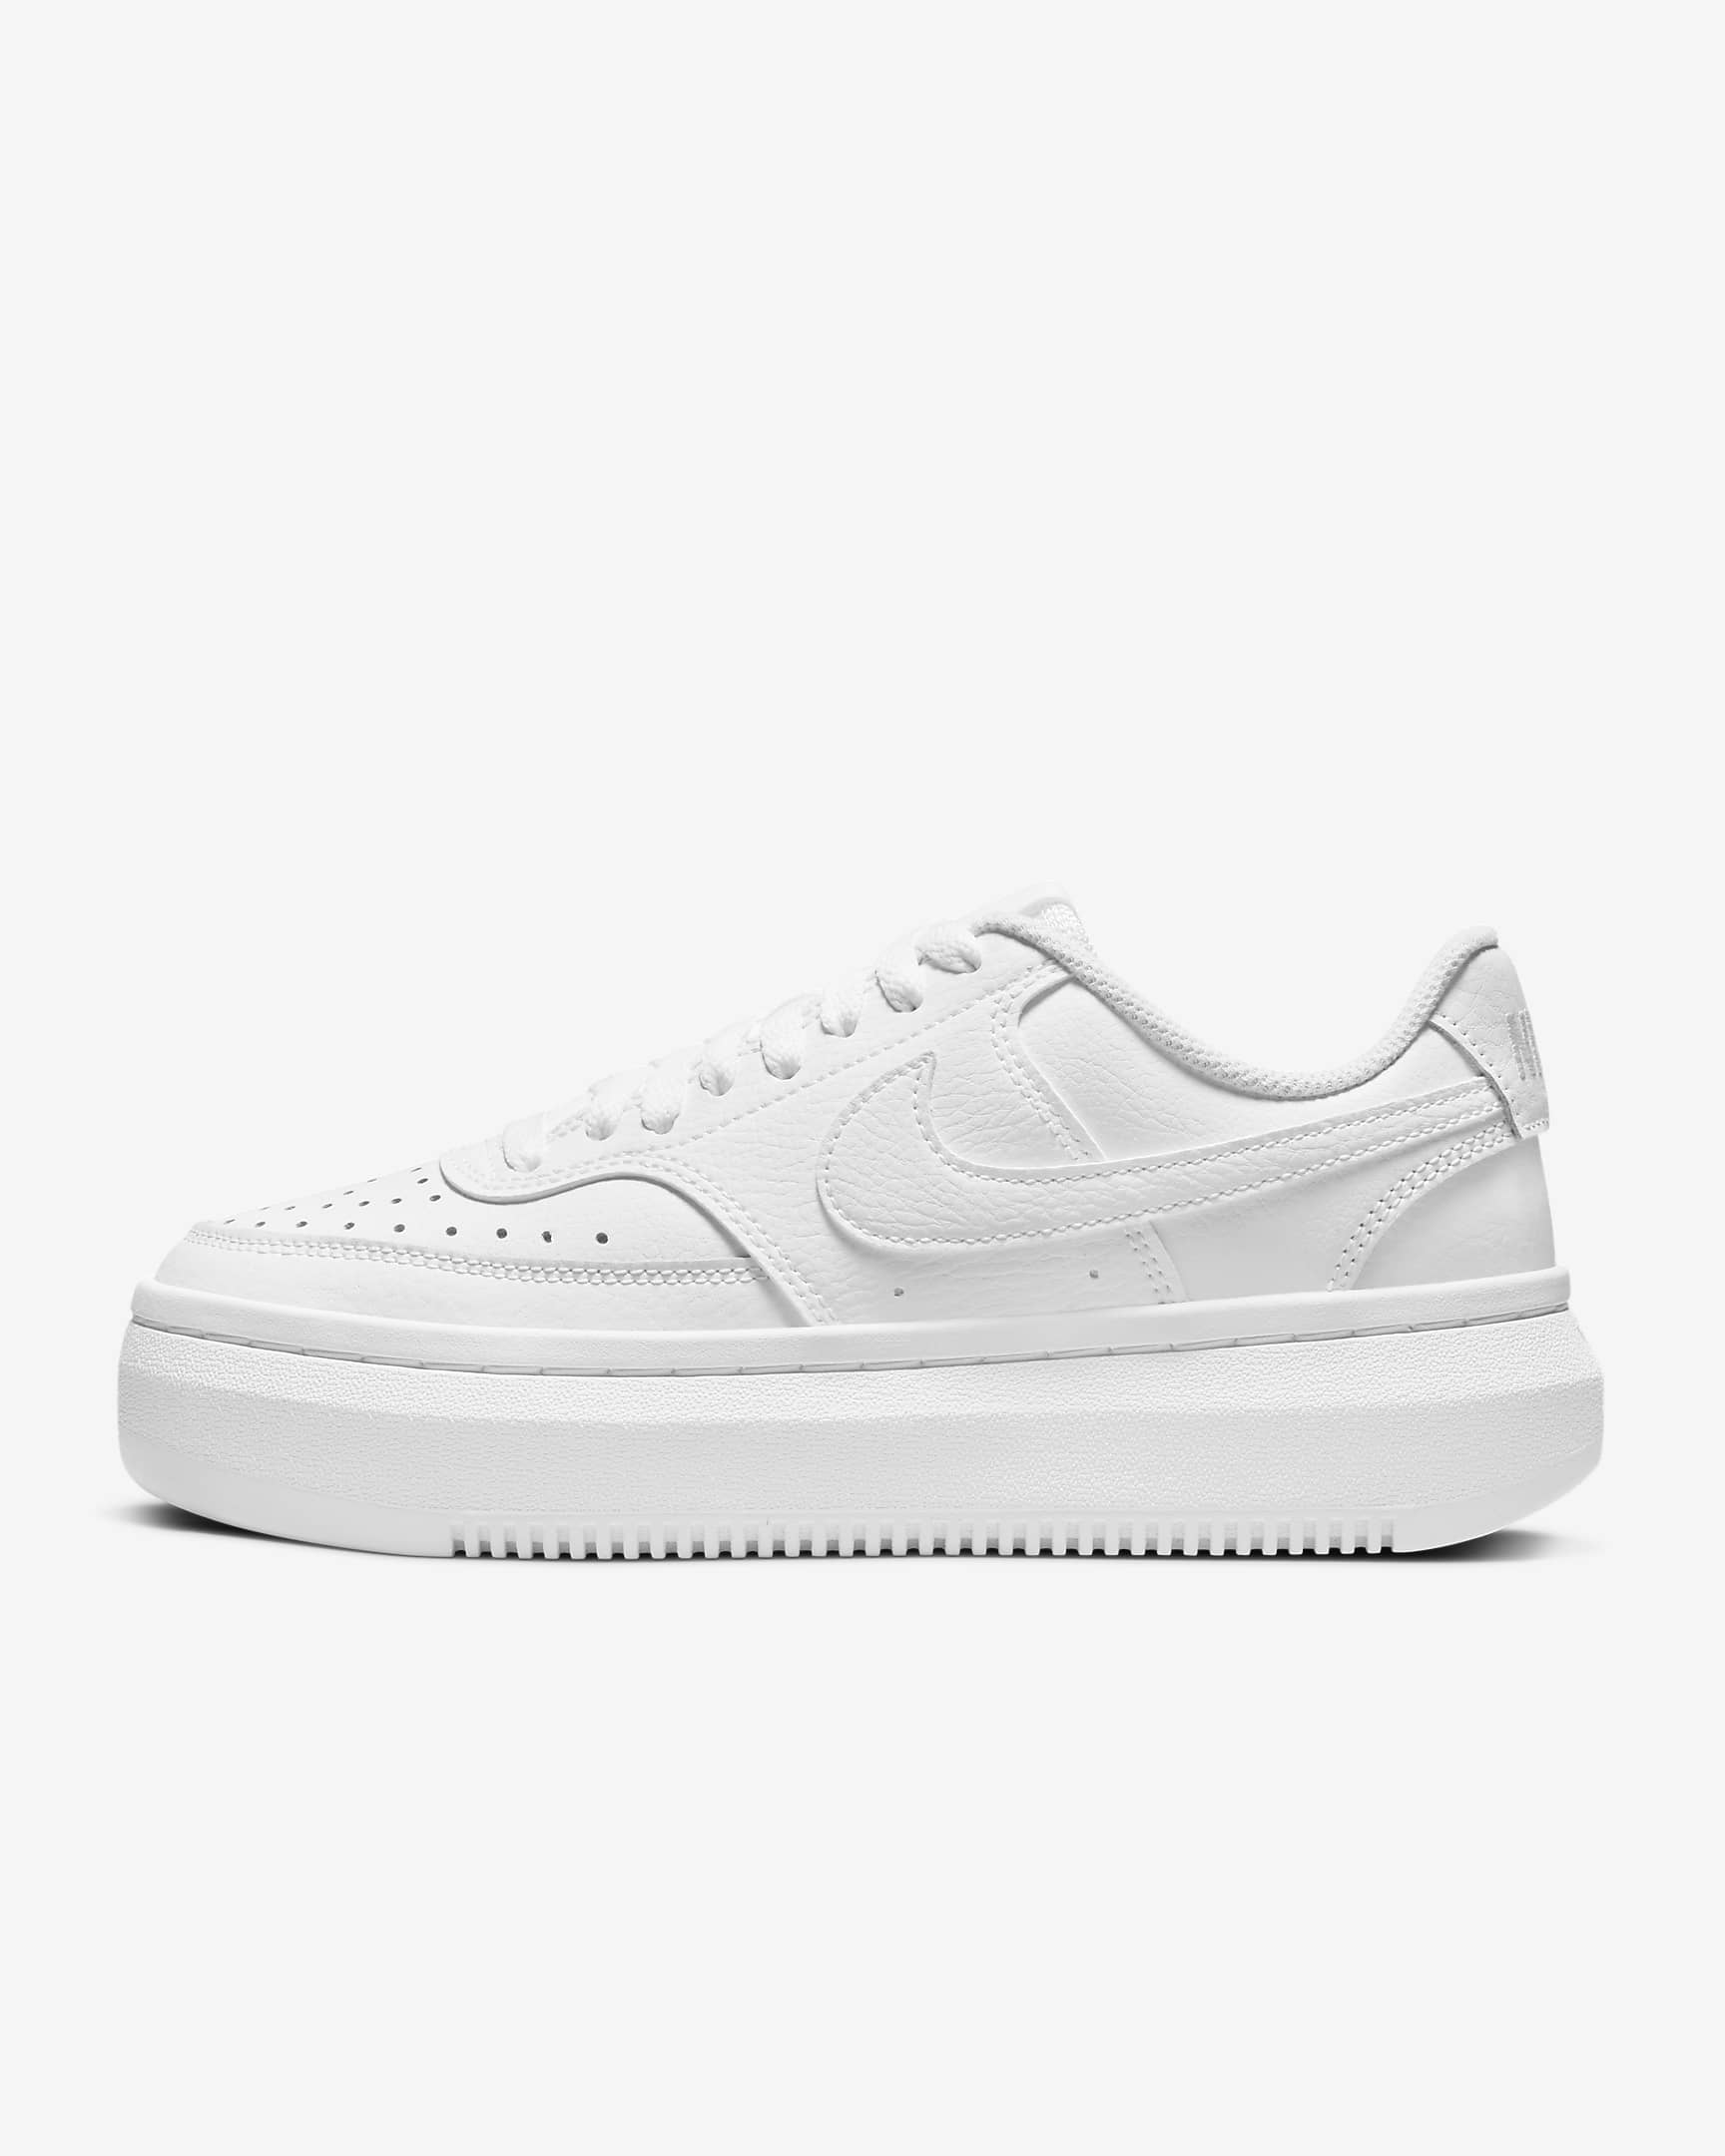 Nike Women's Court Vision Shoes Alta White/White/White DM0113 100